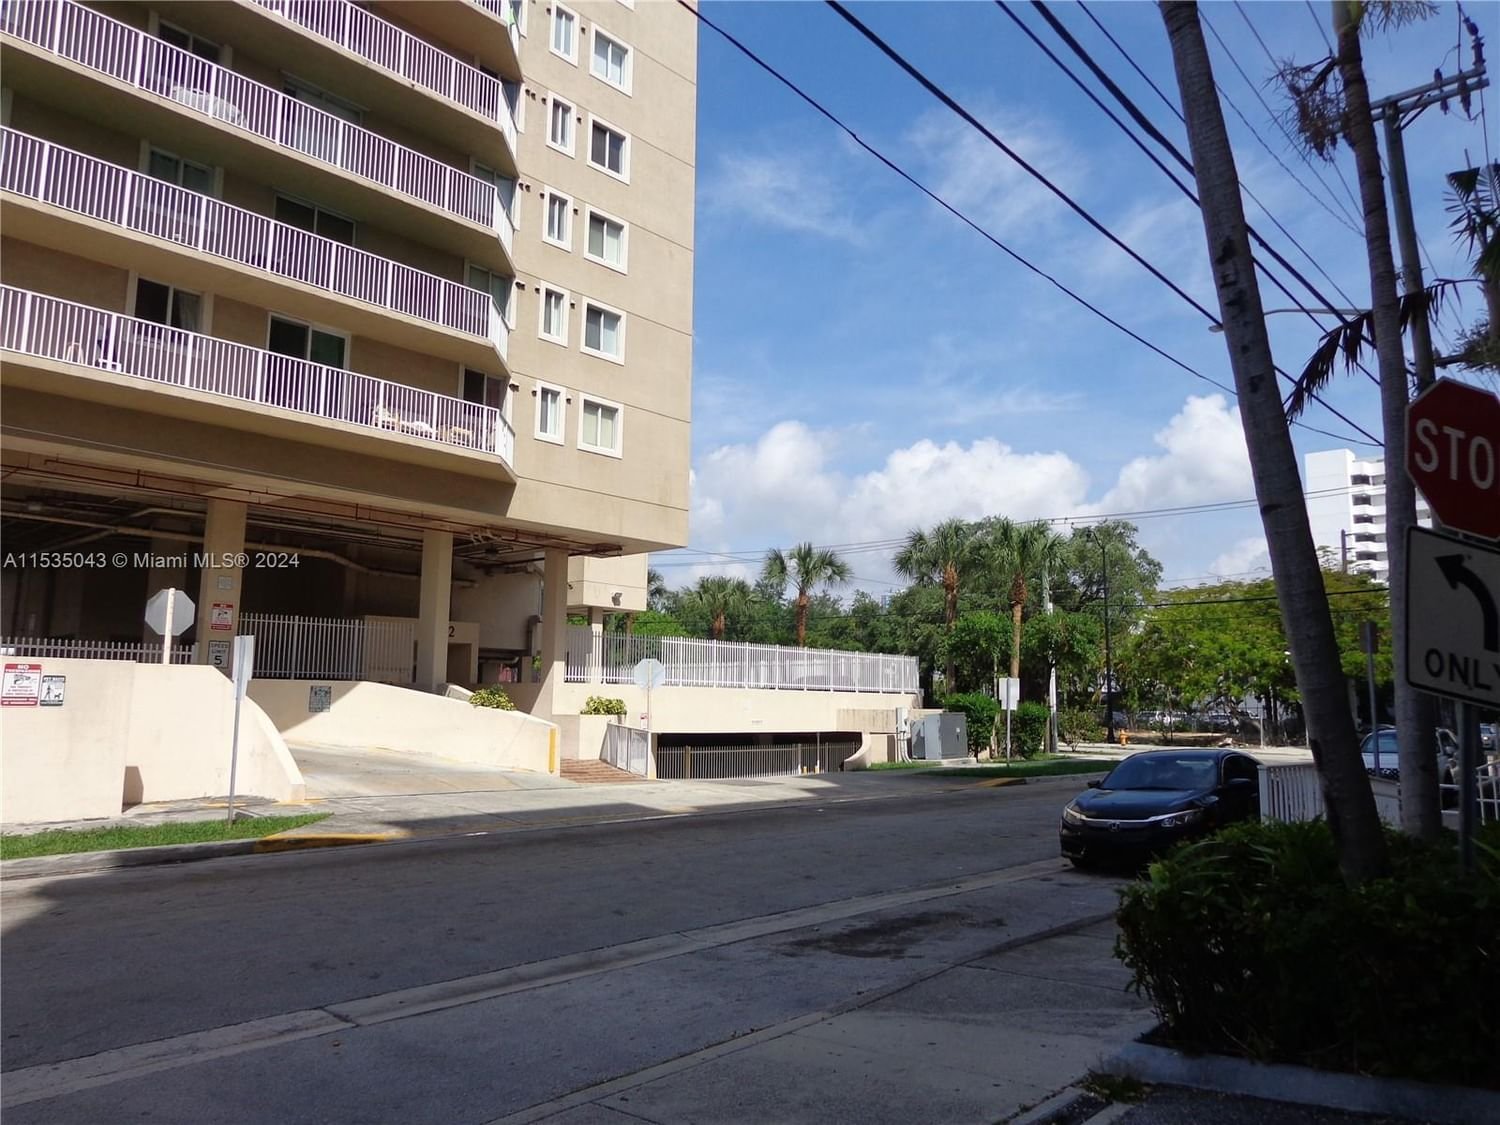 Real estate property located at 102 6th Ave #502, Miami-Dade County, THE CITADEL CONDO, Miami, FL